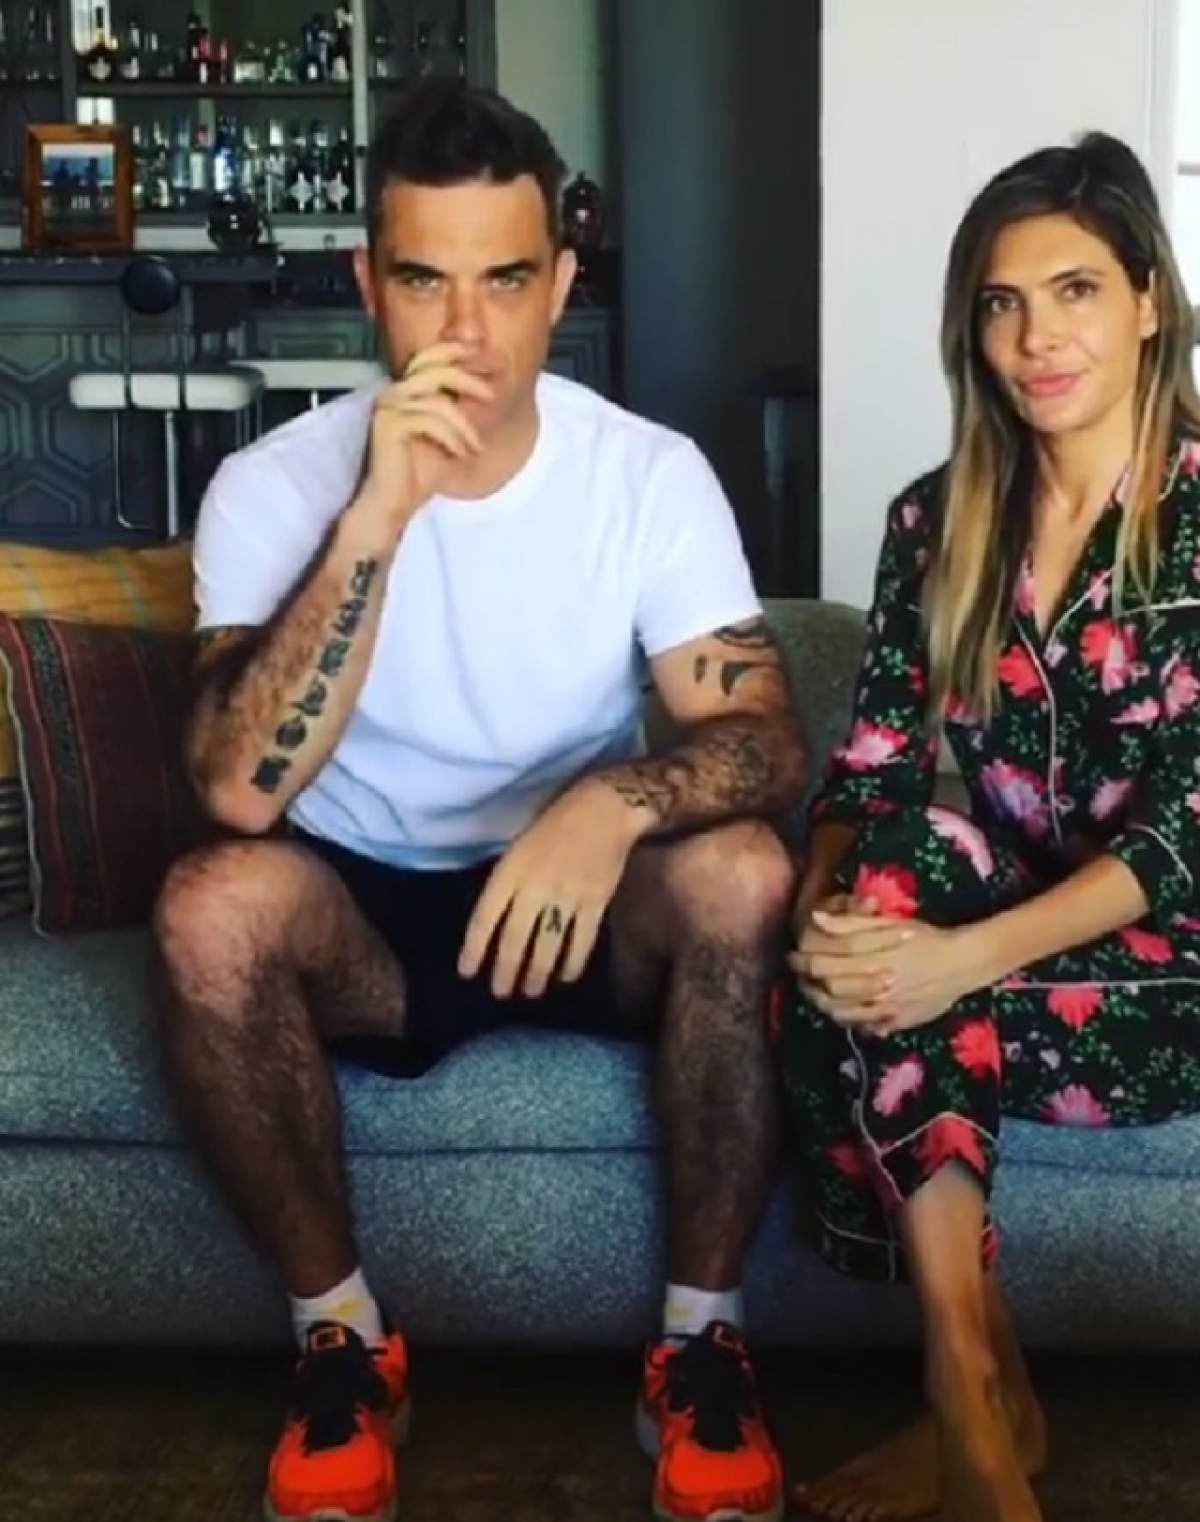 VIDEO / Robbie Williams, filmat gol de soţia lui! Imaginile au ajuns pe internet: "Îţi atârnă..."